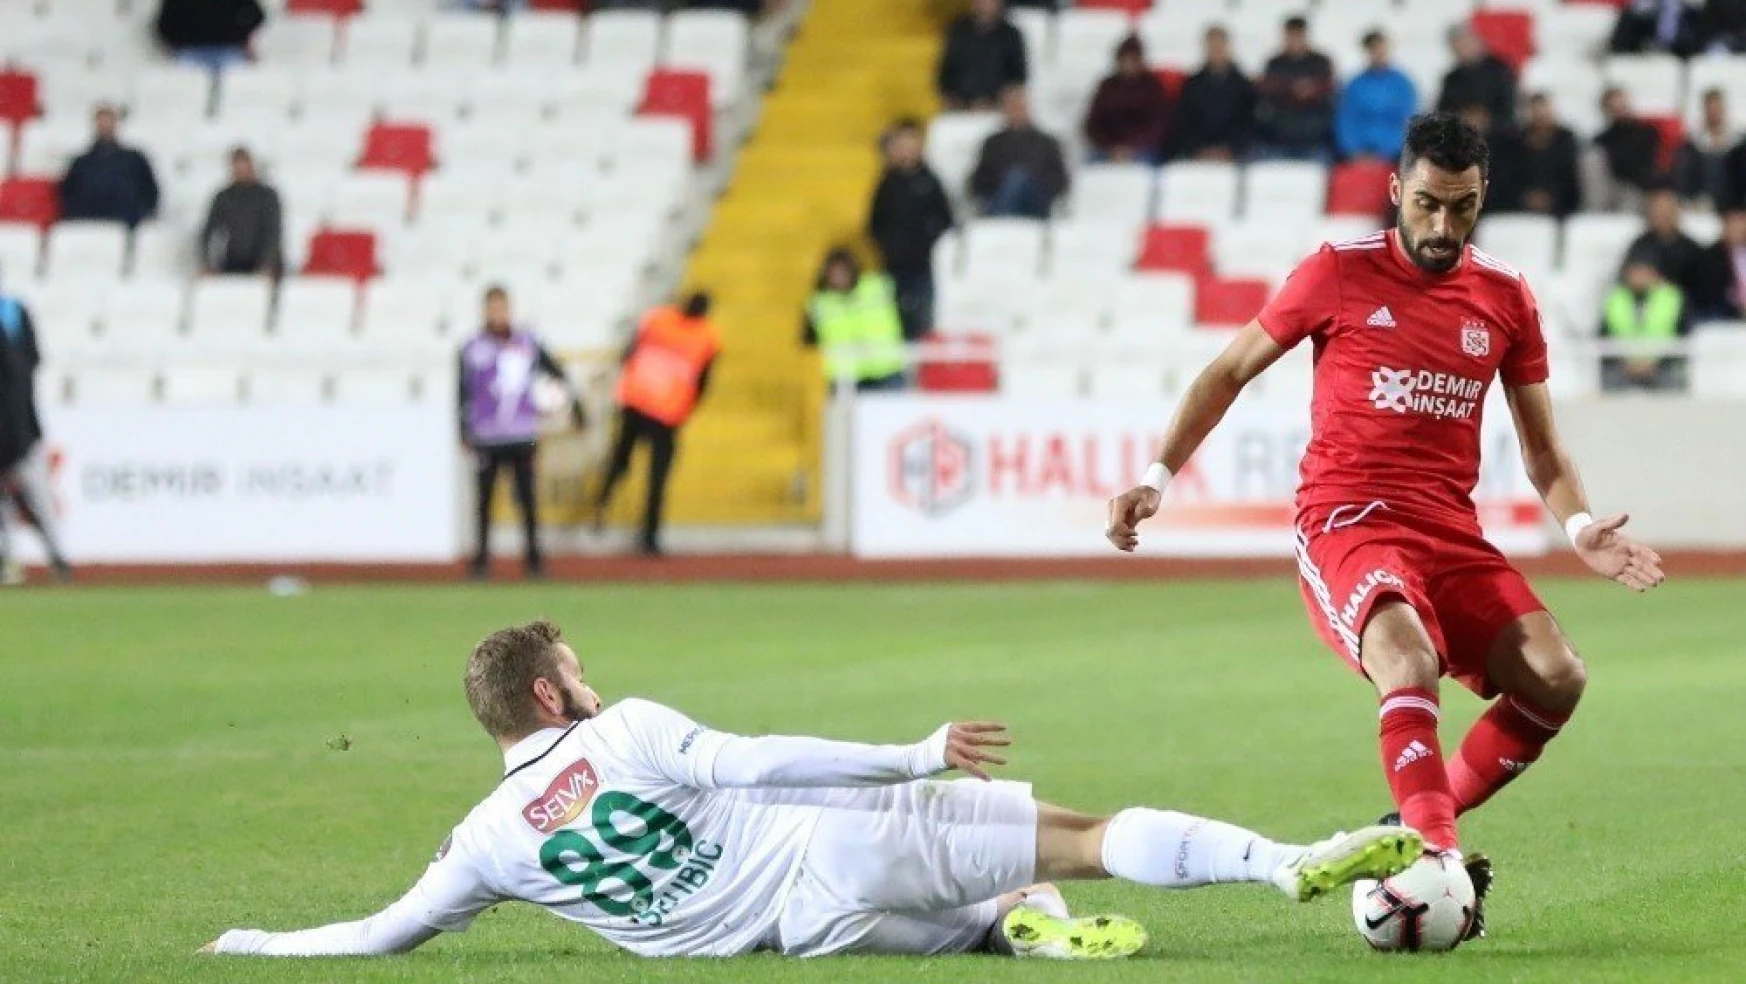 Spor Toto Süper Lig: DG Sivasspor: 0 - Atiker Konyaspor: 0 (Maç sonucu)